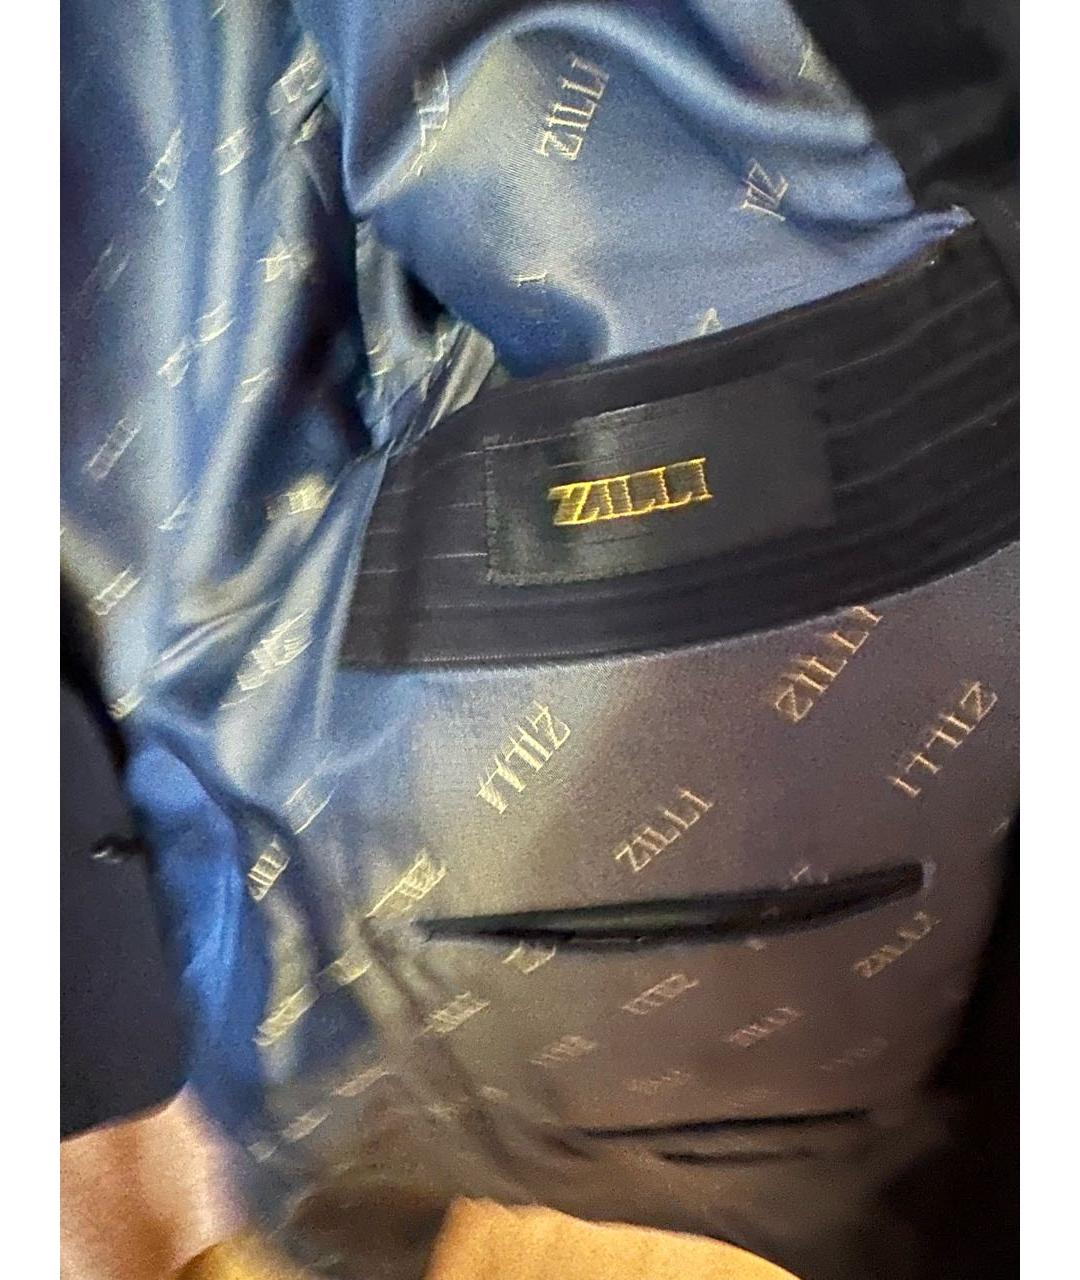 ZILLI Темно-синий шерстяной жакет/пиджак, фото 2